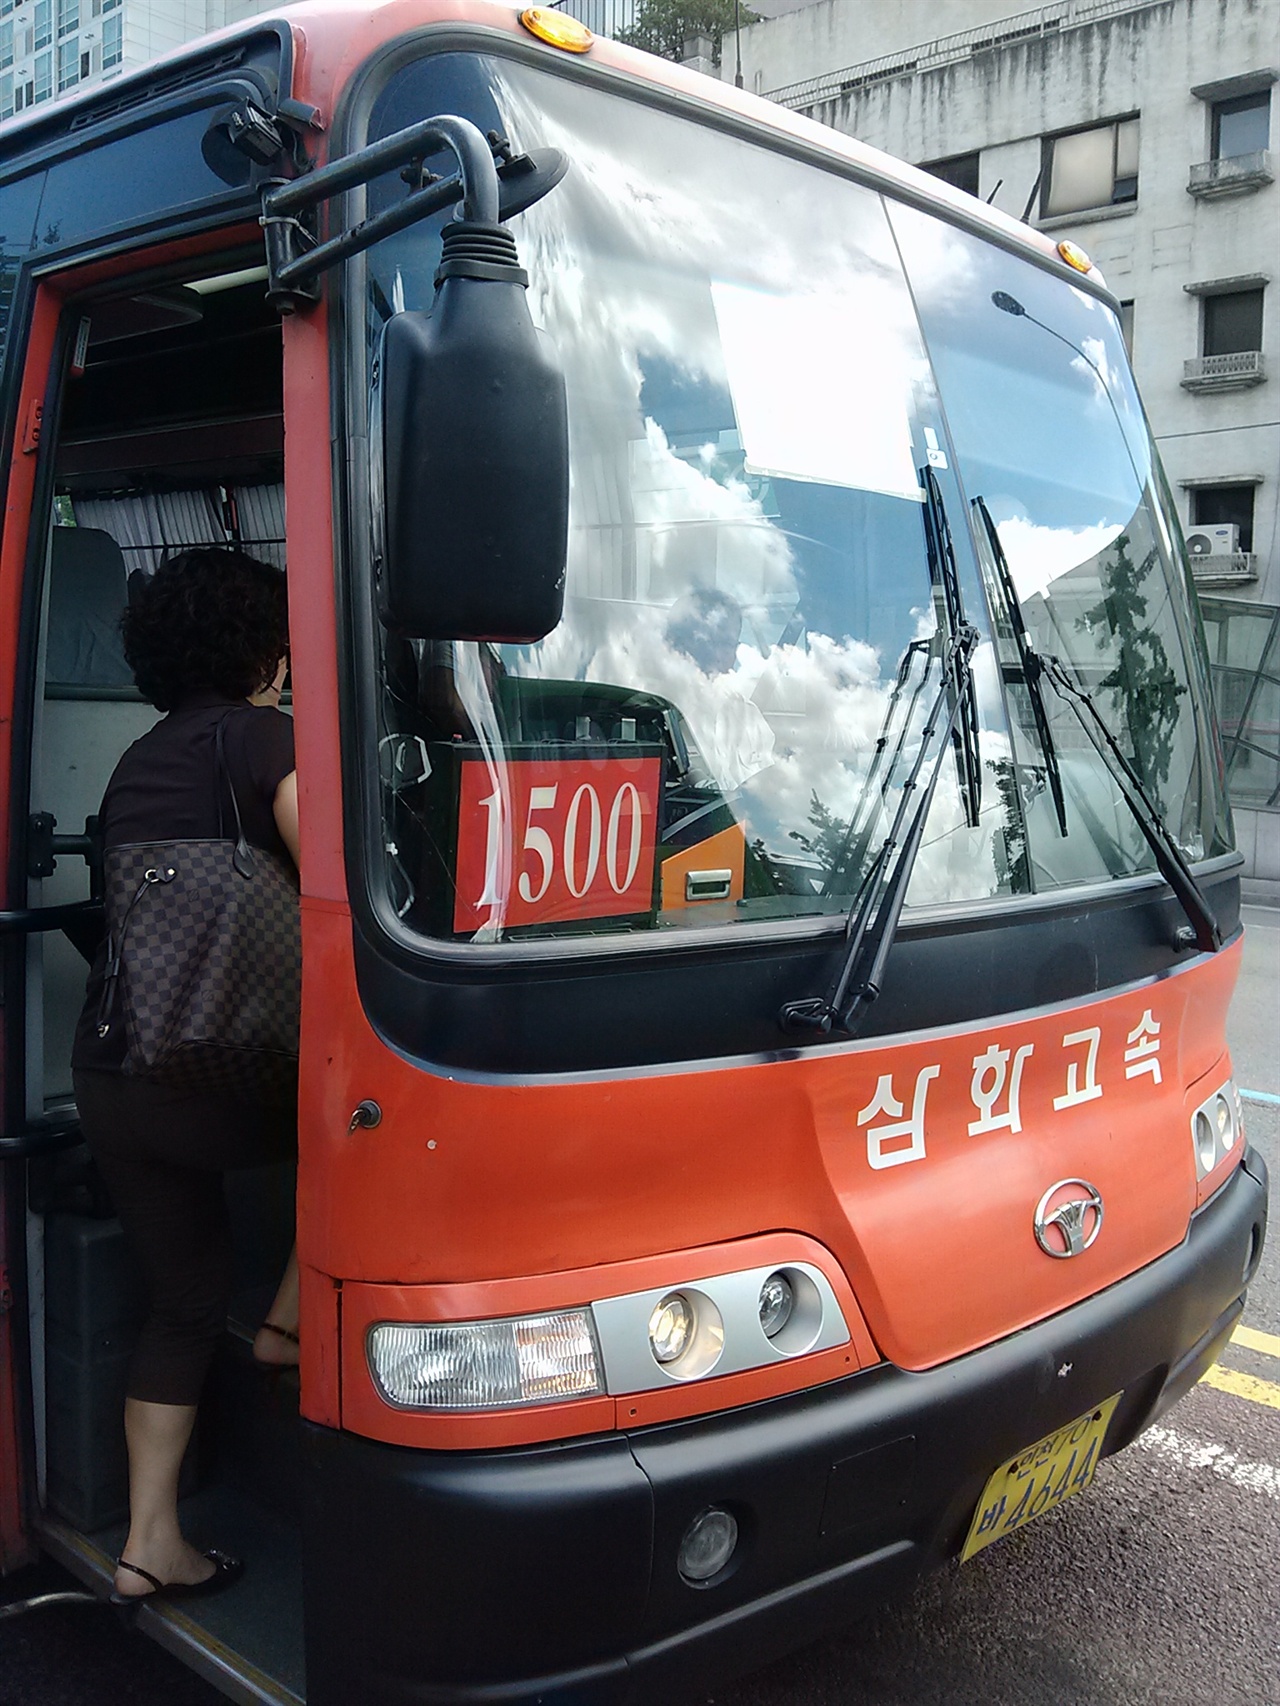 '인천에서 서울가는 버스'하면 삼화고속이 떠올랐던 시절이 있었다. 사진은 1500번.